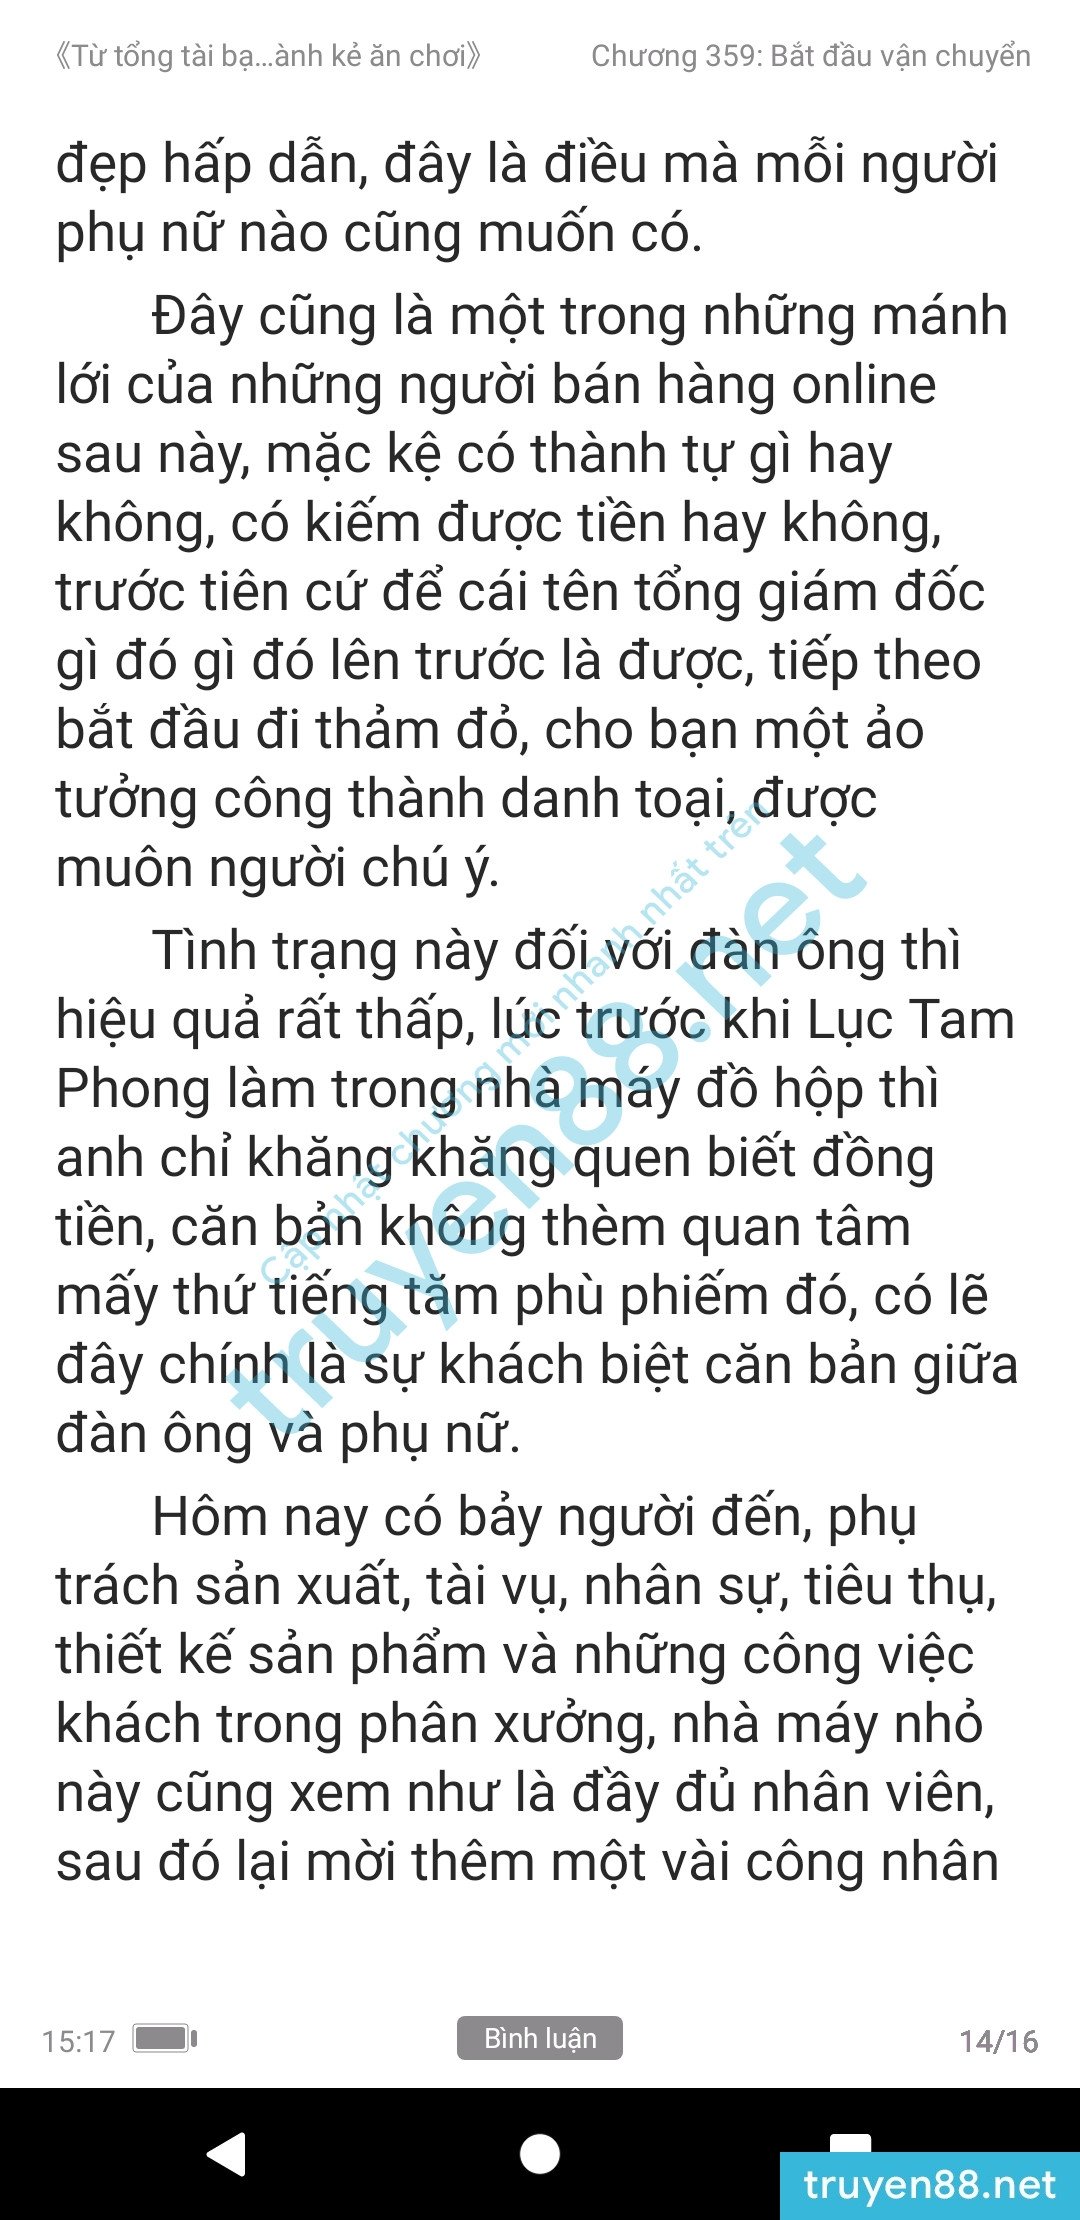 ke-an-choi-bien-tong-tai-359-1